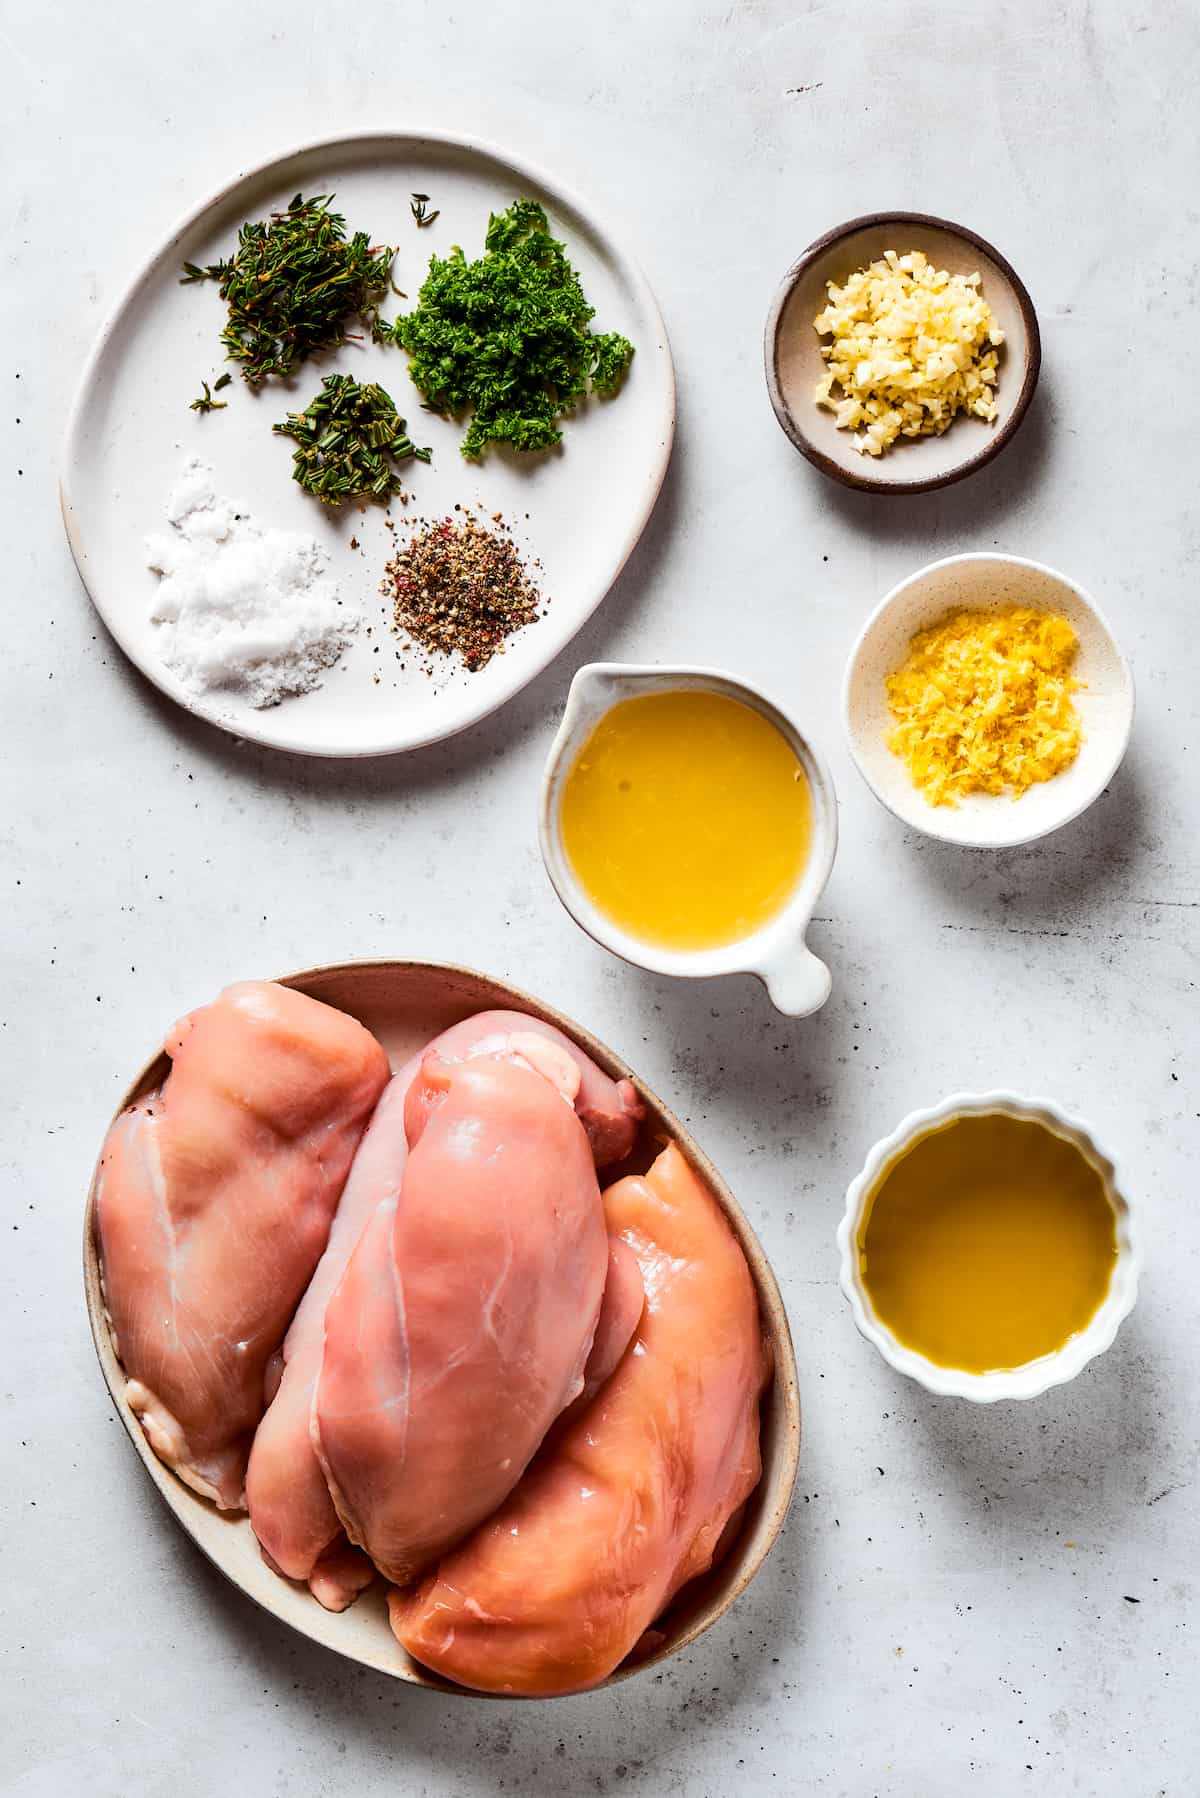 From top: Seasonings, garlic, lemon juice, chicken breasts, olive oil.